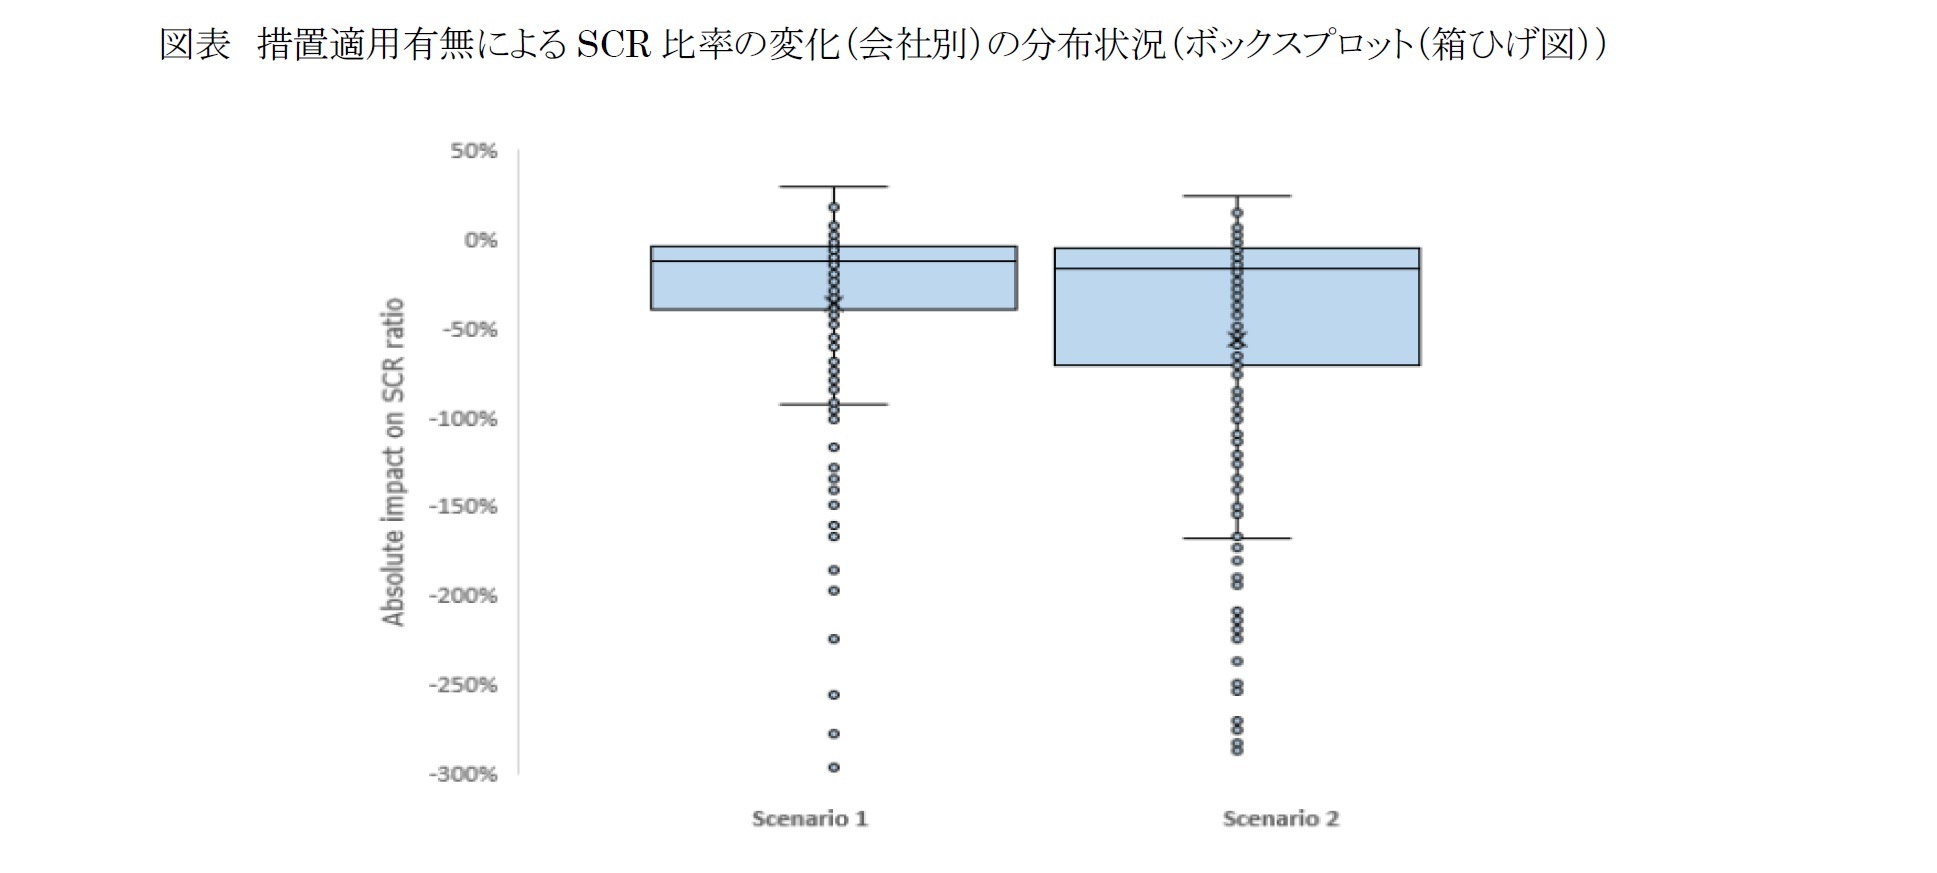 図表 措置適用有無によるSCR 比率の変化（会社別）の分布状況（ボックスプロット（箱ひげ図））